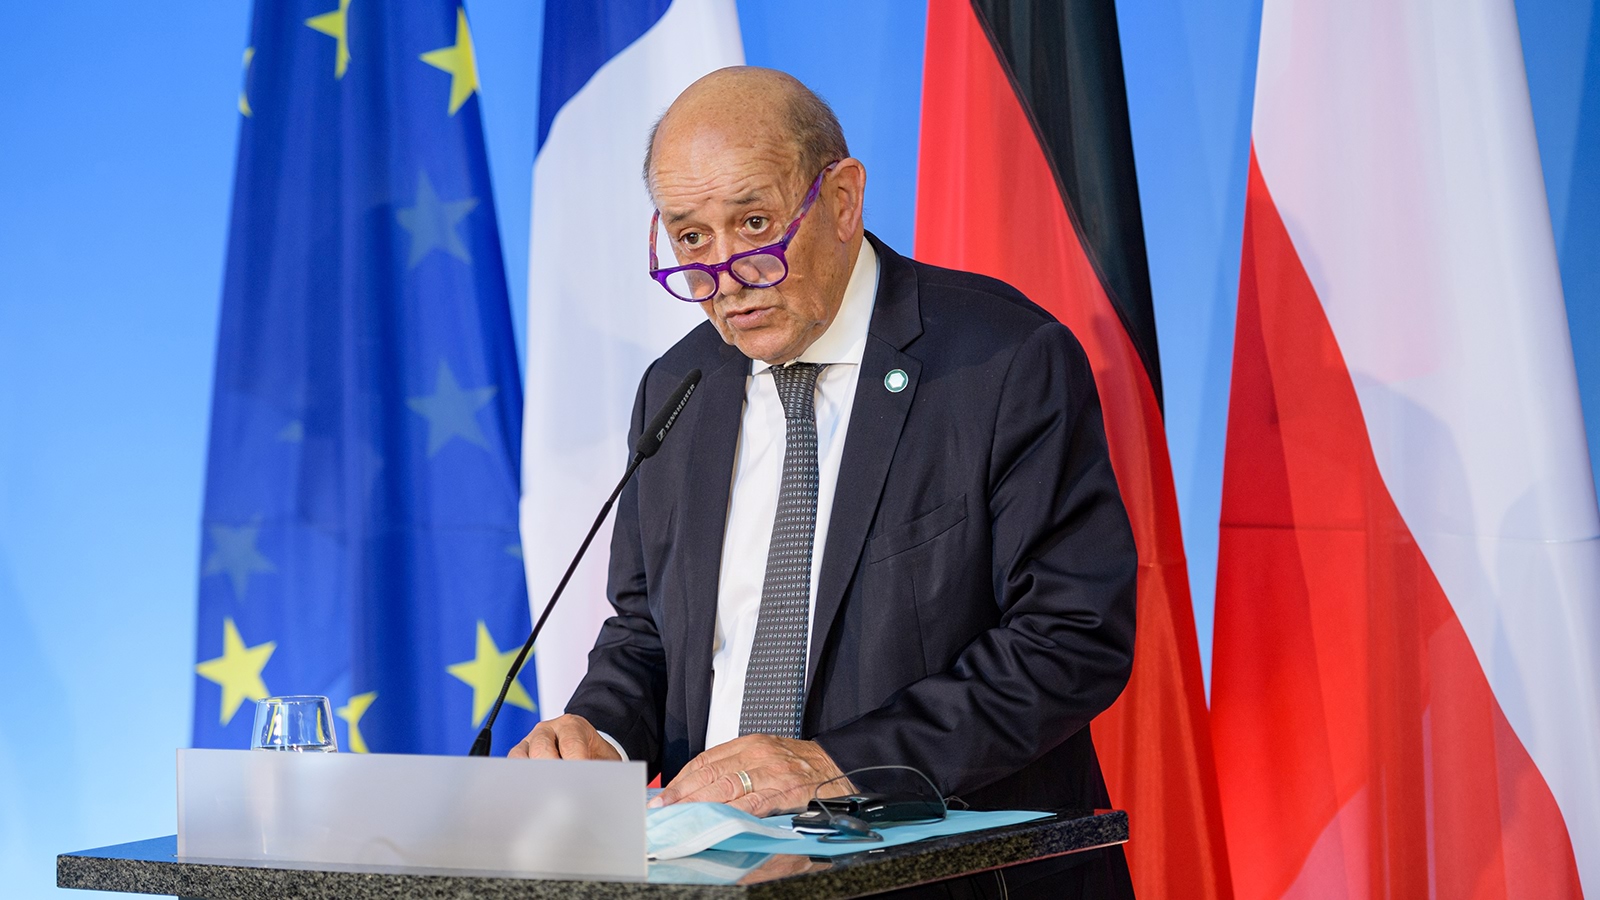 فرنسا تستضيف مؤتمرا دوليا بشأن ليبيا في نوفمبر المقبل